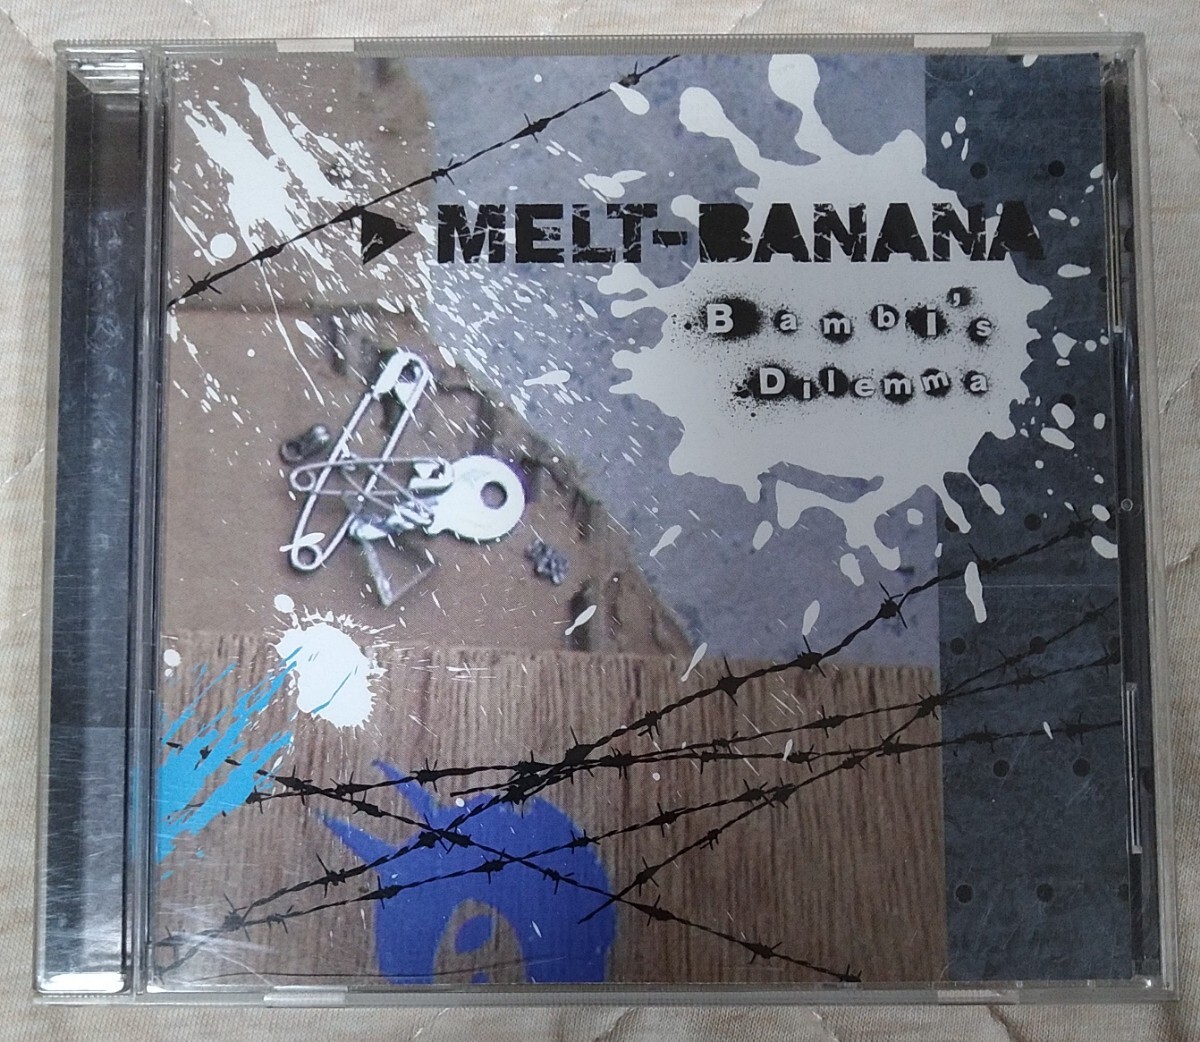 MELT-BANANA Bambi's Dilemma 廃盤輸入盤中古CD メルト・バナナ メルトバナナ yako agata AZCD-0007_画像1